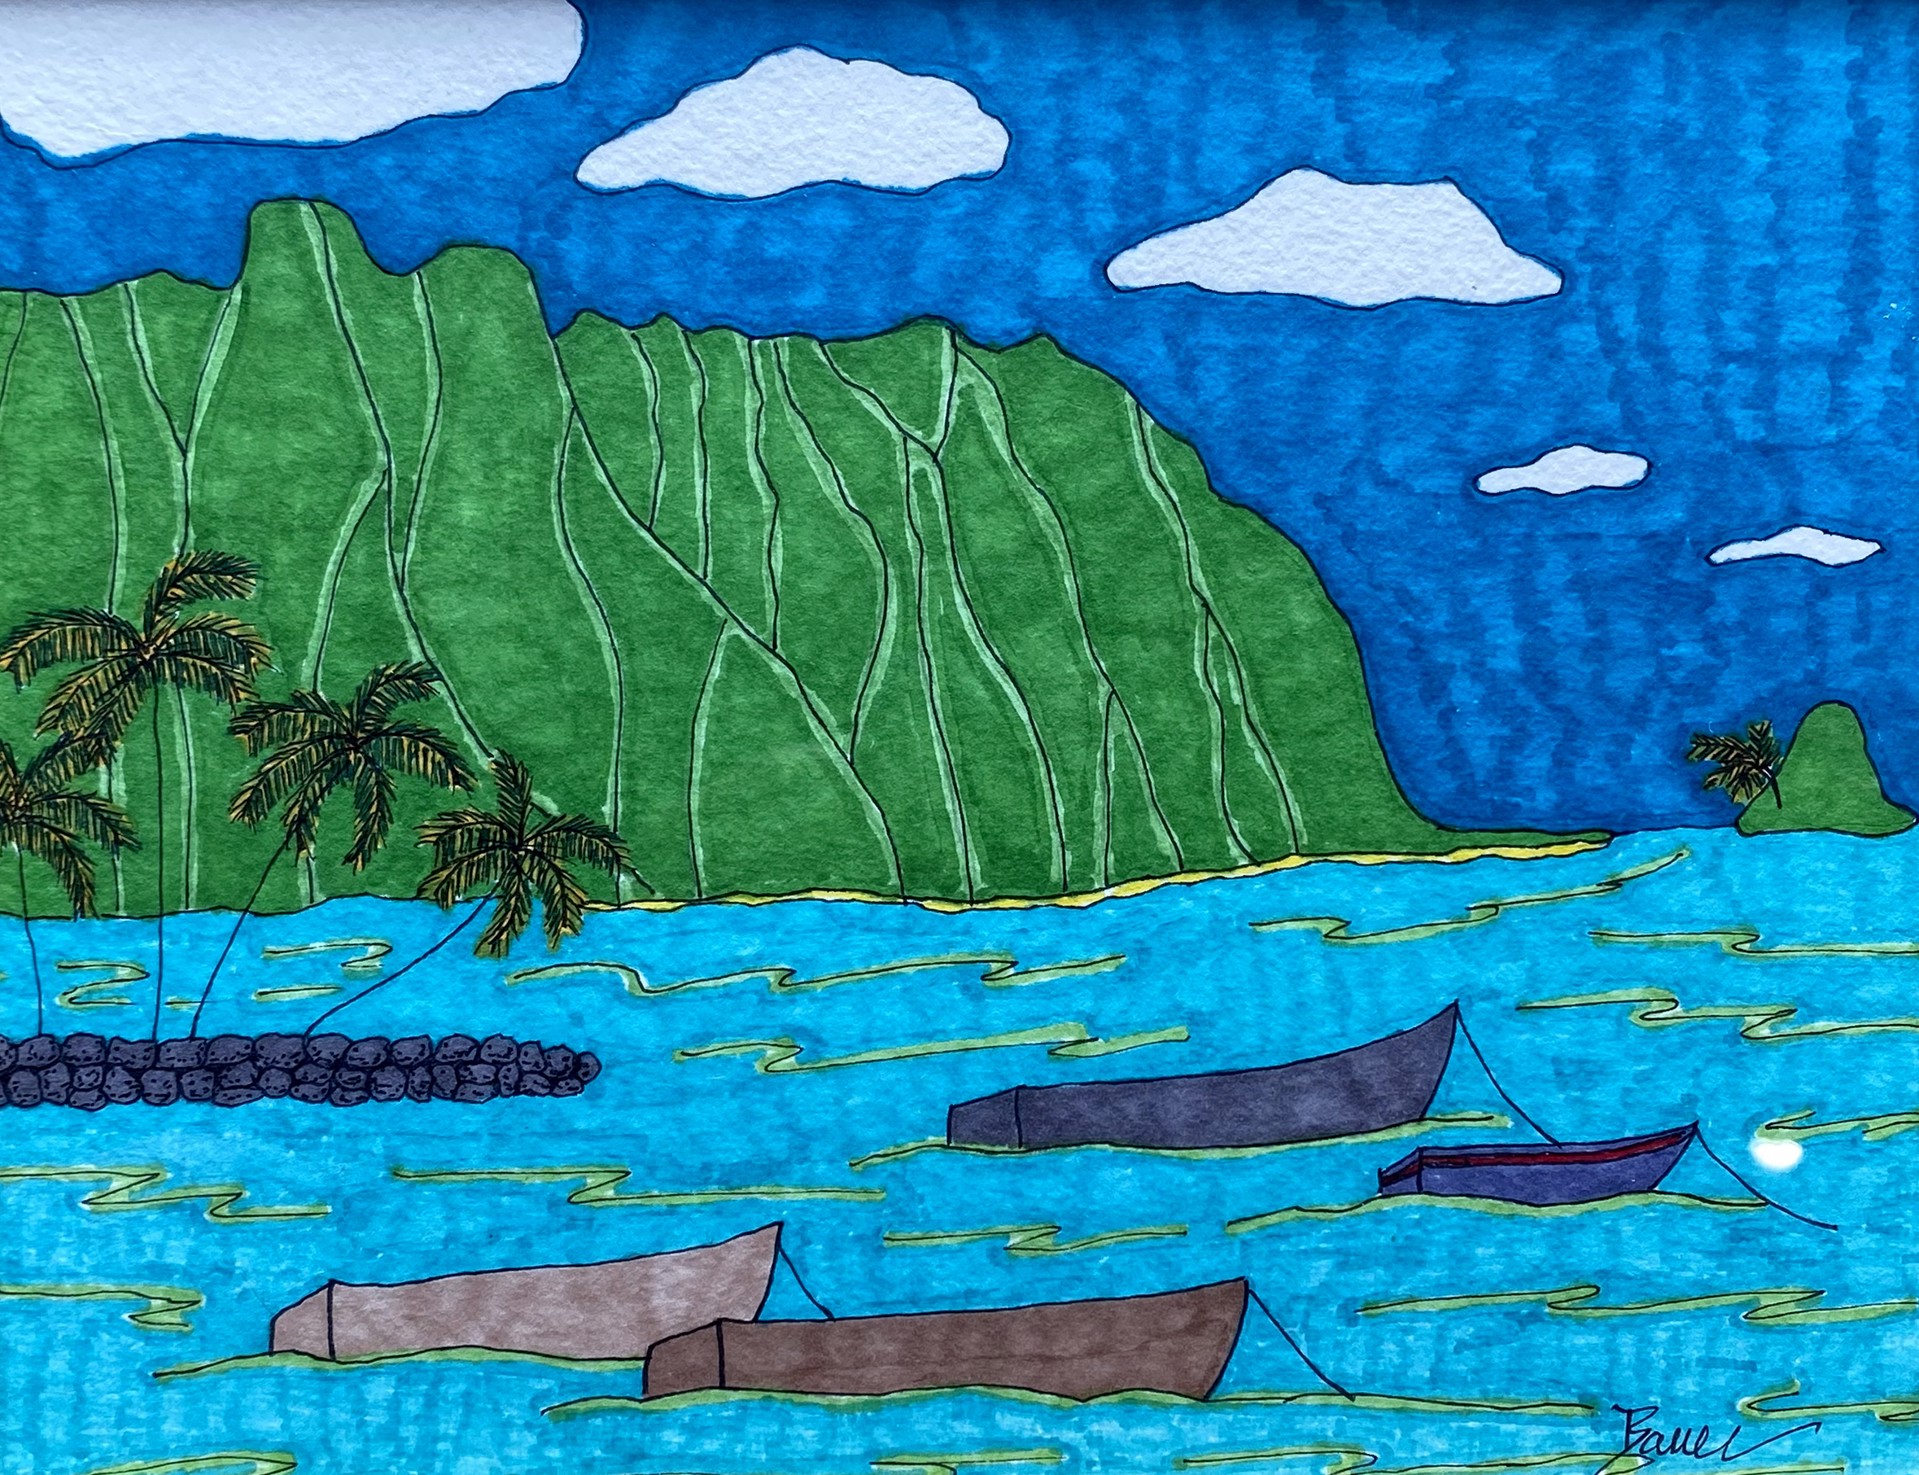 Kāneʻohe Bay by Carolyn Morgan Bauer